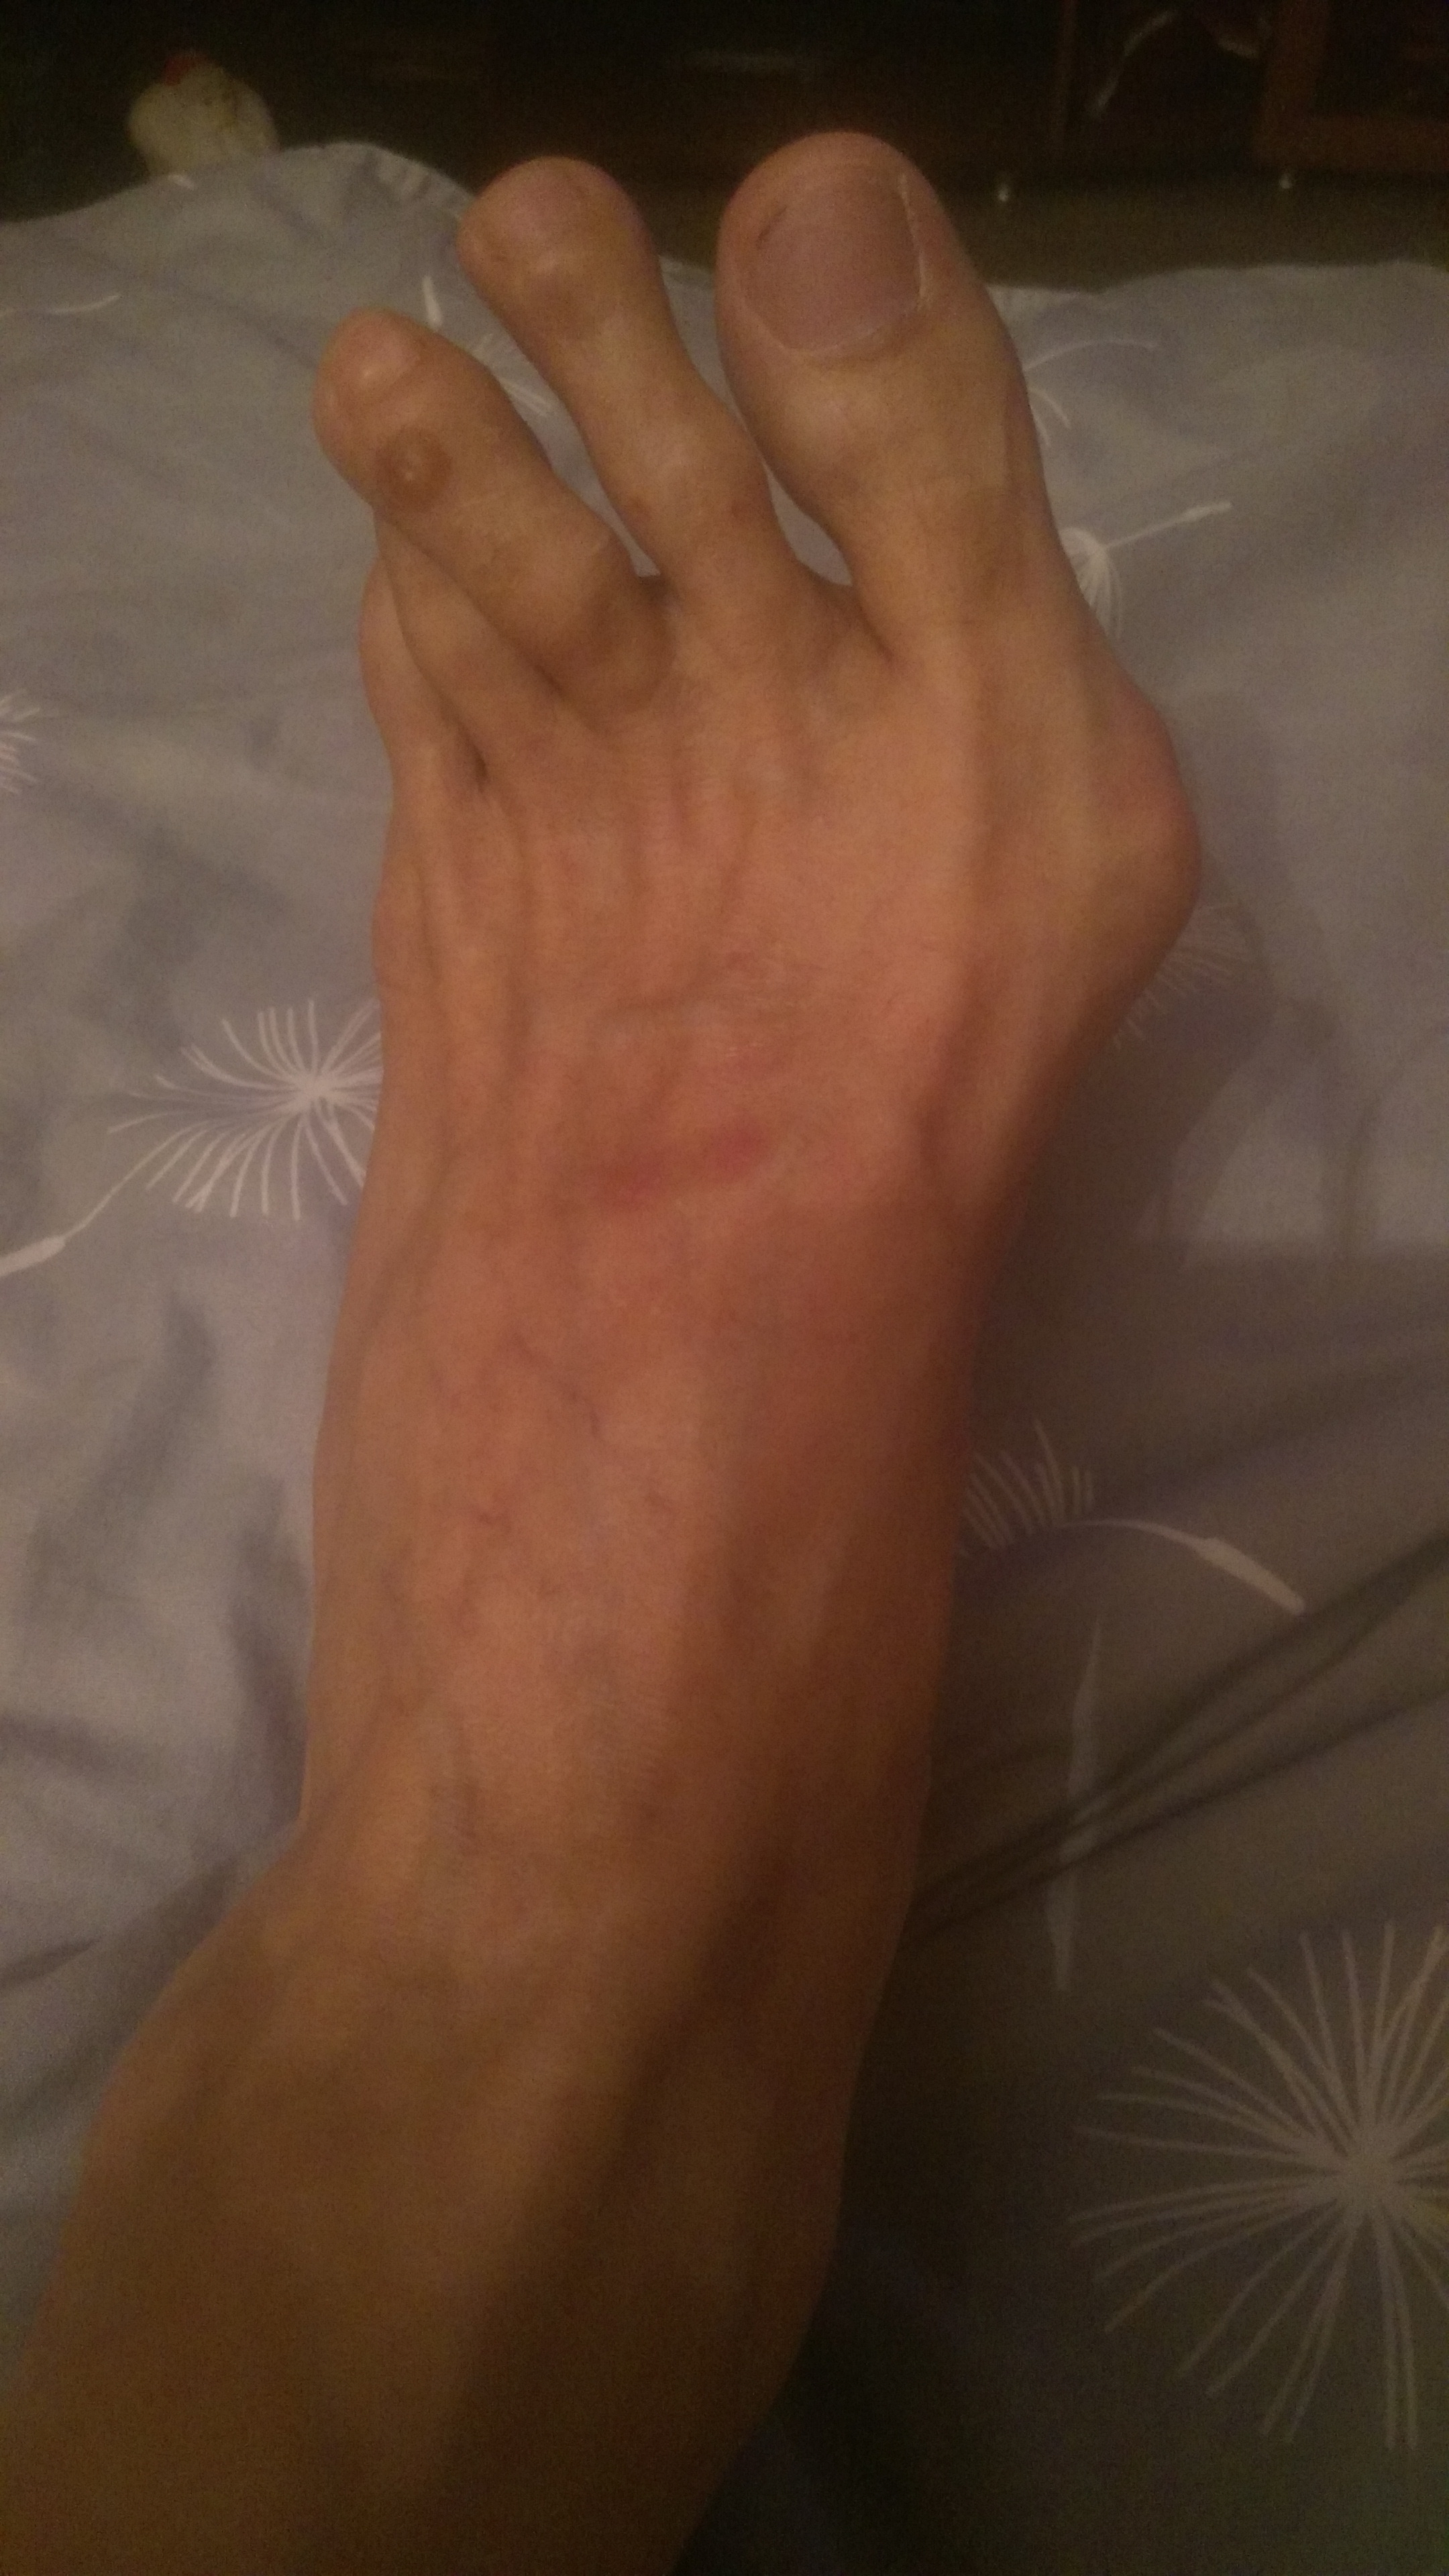 Молоткообразная деформация пальцев ног, причины и лечение